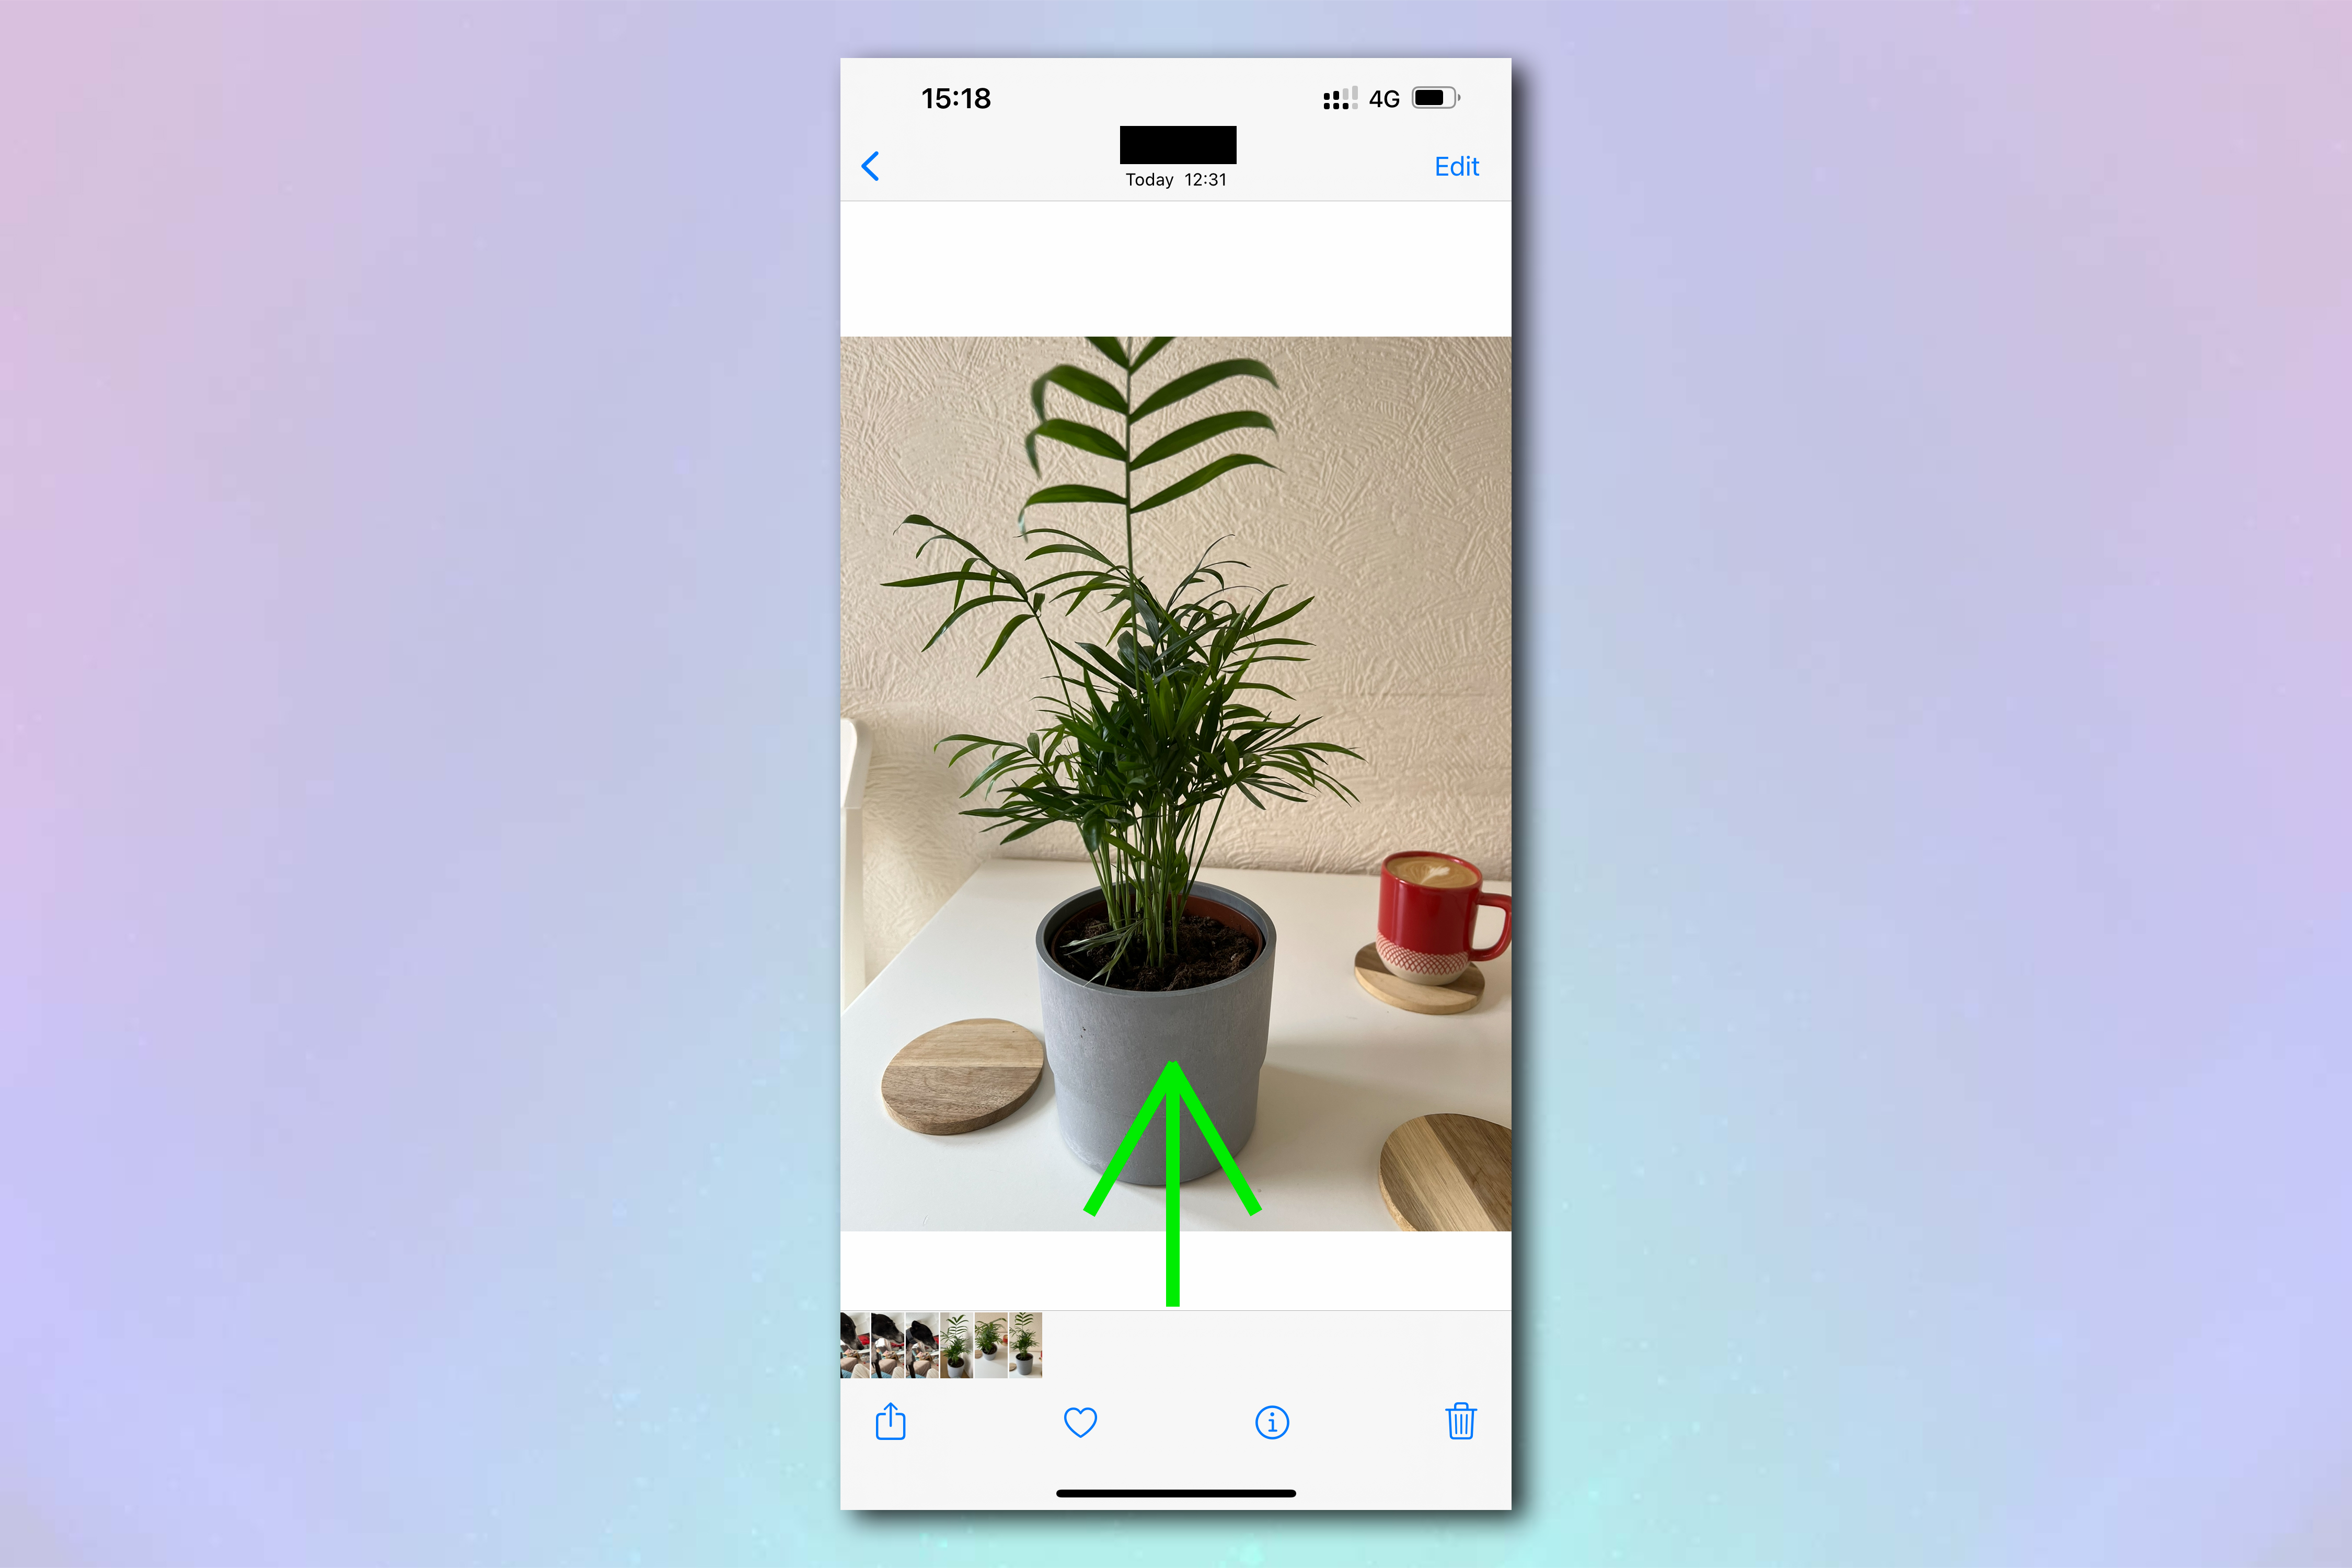 Скриншот изображения в приложении «Фотографии iPhone» с зеленой стрелкой, указывающей, что пользователю нужно провести пальцем вверх.